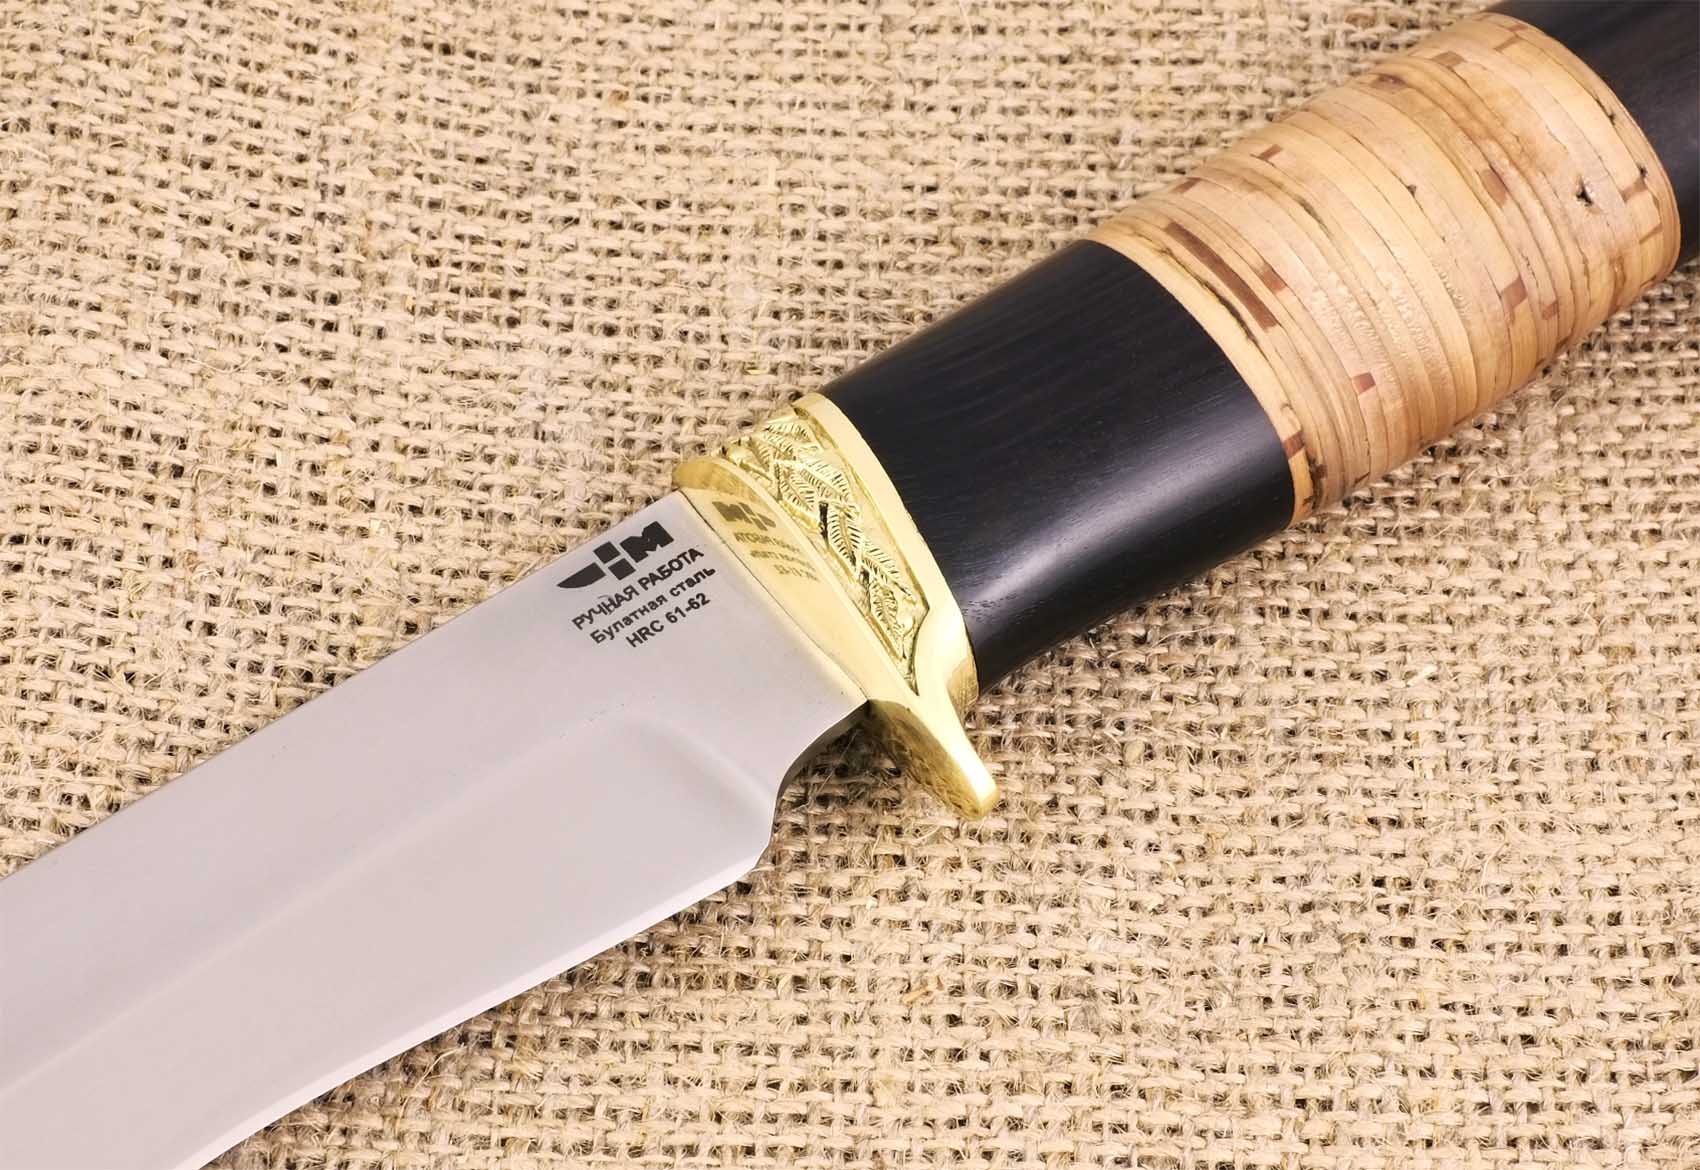 Нож нескладной булатная сталь Ножемир МИРАЖ (2995)б